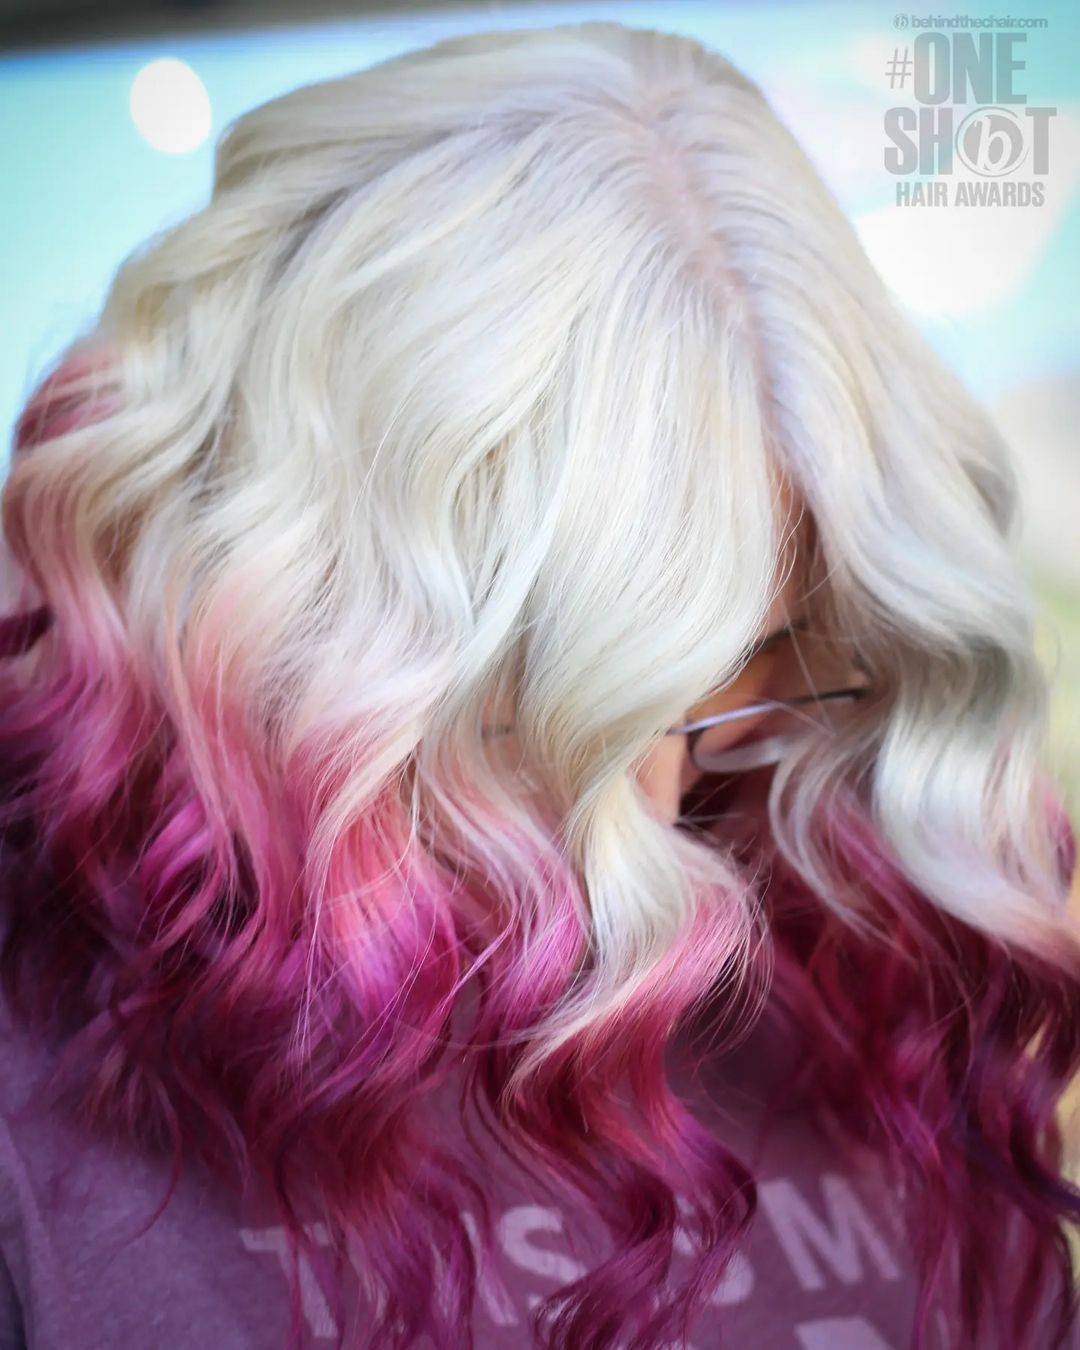 Burgundy hair color 174 burgundy hair color | burgundy hair color for women | burgundy hair color highlights Burgundy Hair Color